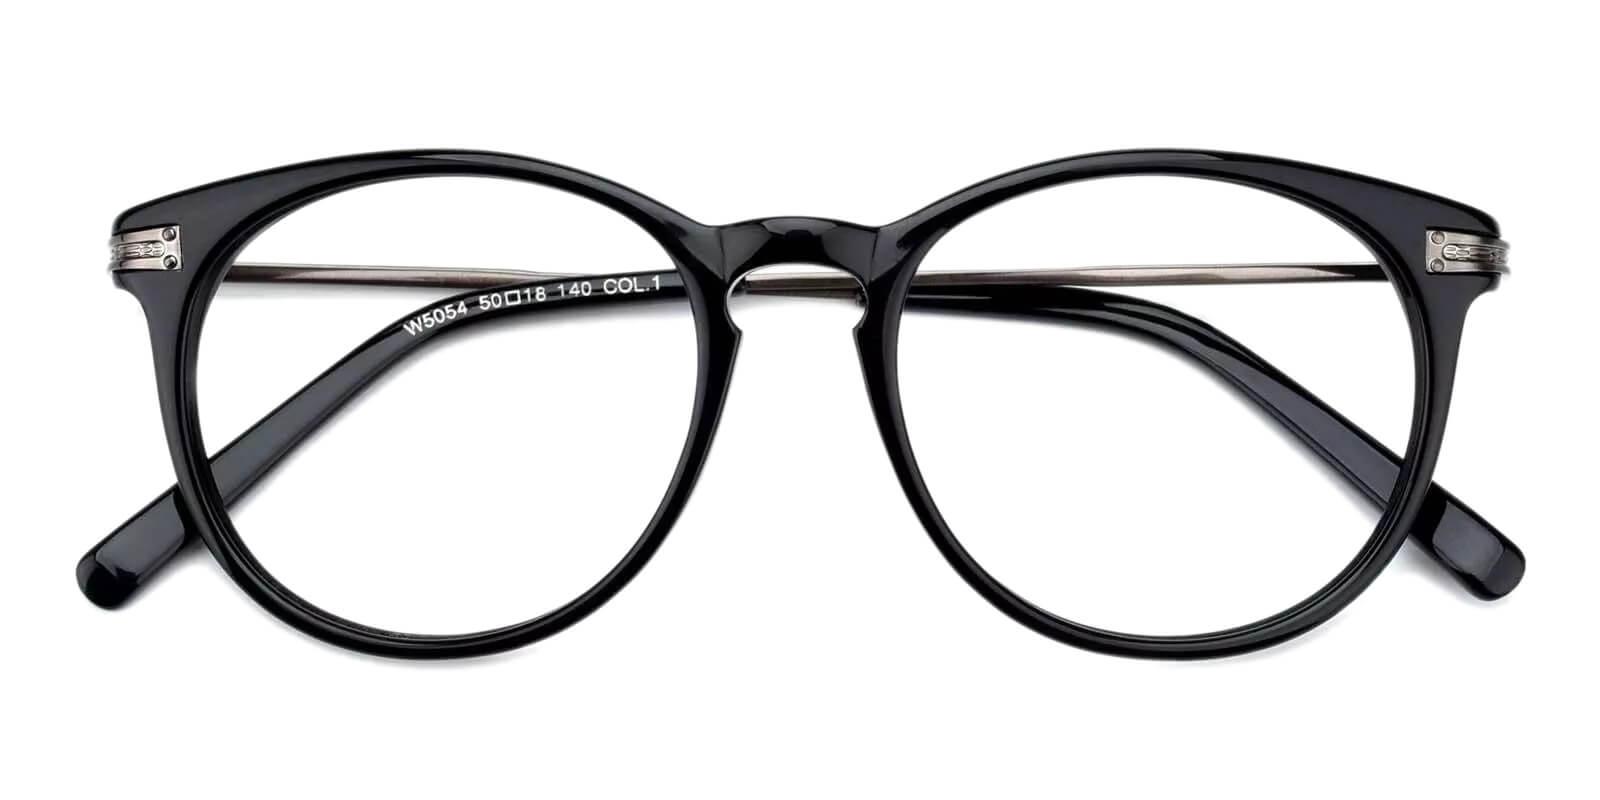 Ophelia Black Metal Eyeglasses , Fashion , UniversalBridgeFit Frames from ABBE Glasses